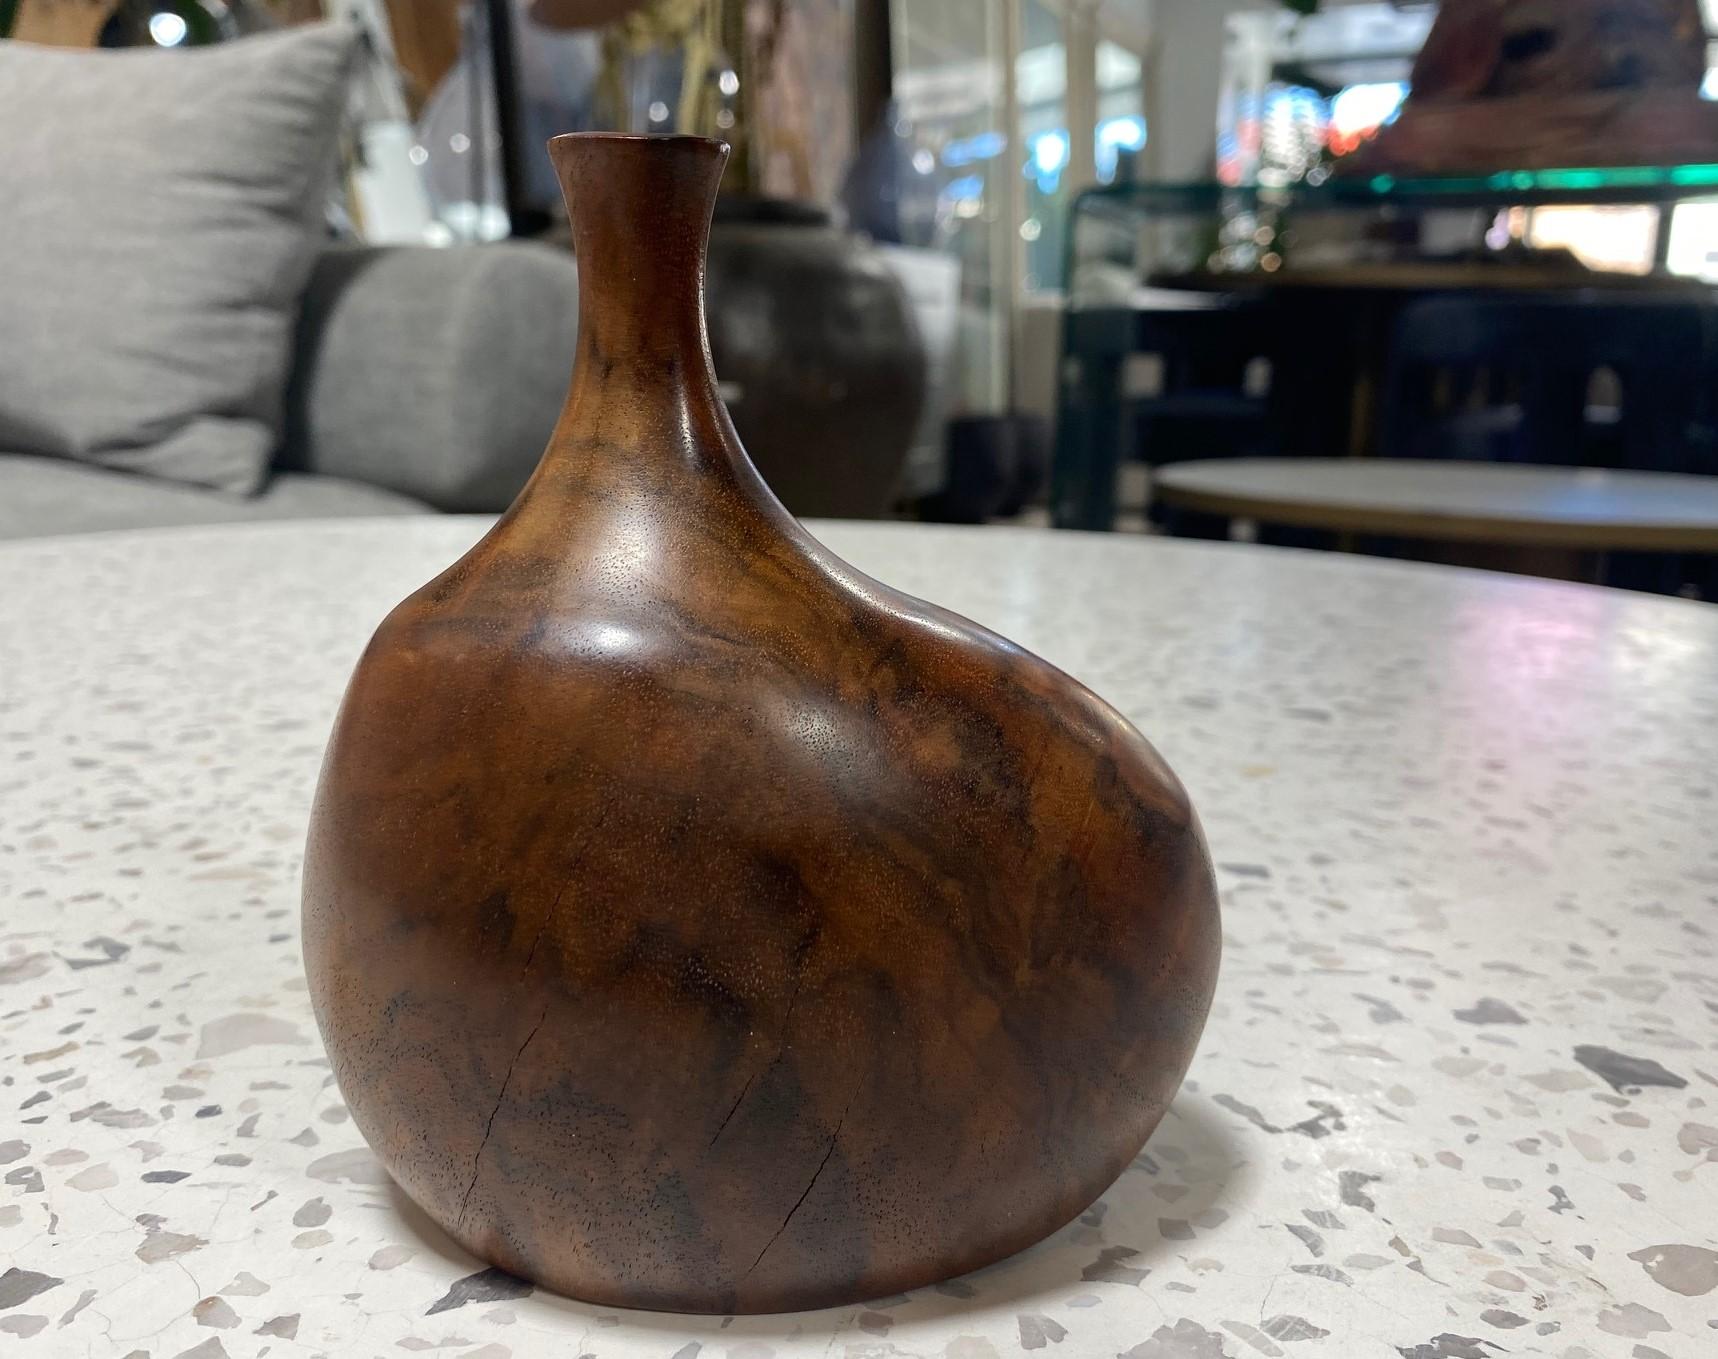 Un très beau vase en bois tourné et sculpté par le célèbre artiste/sculpteur américain (Mendocino, Californie) Doug Ayers. Le grain naturel et organique du bois est tout à fait spectaculaire dans cette pièce. 

Signé par Ayers sur la base.

L'œuvre